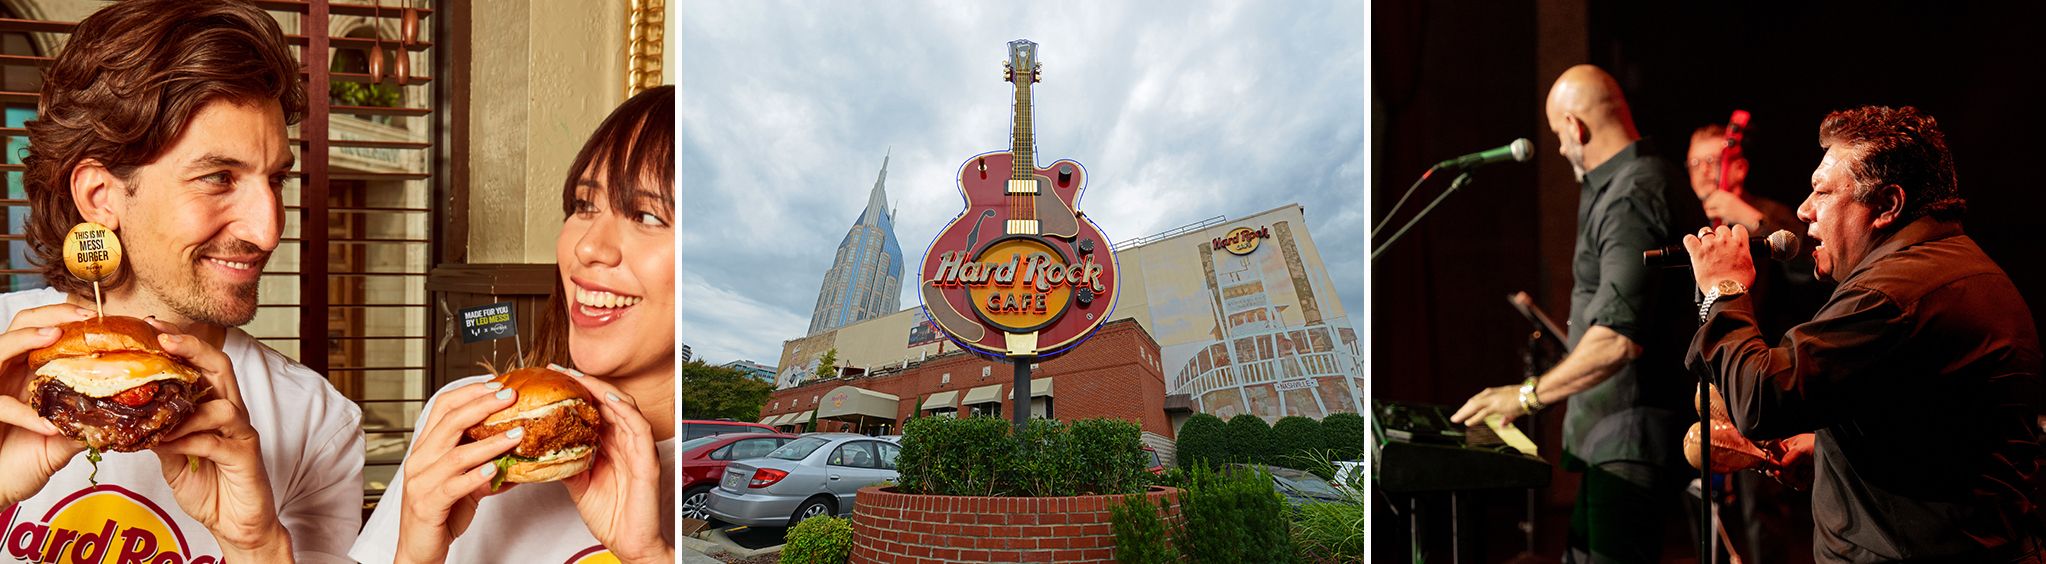 Hard Rock Cafe in Nashville, TN